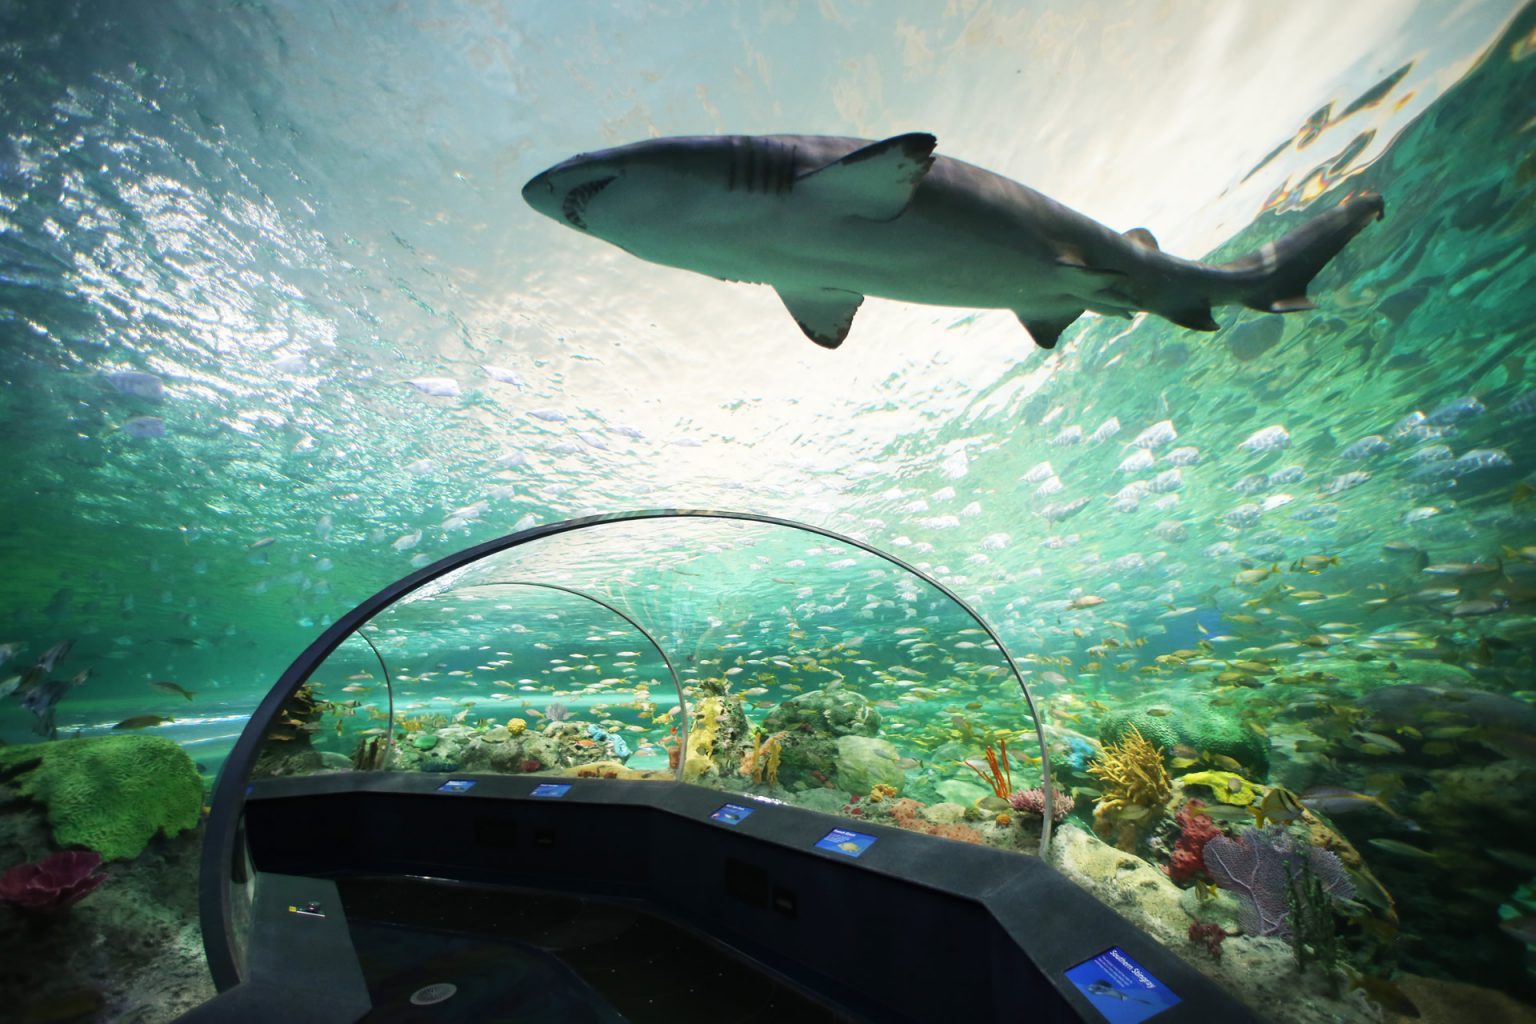 Shark in an aquarium.